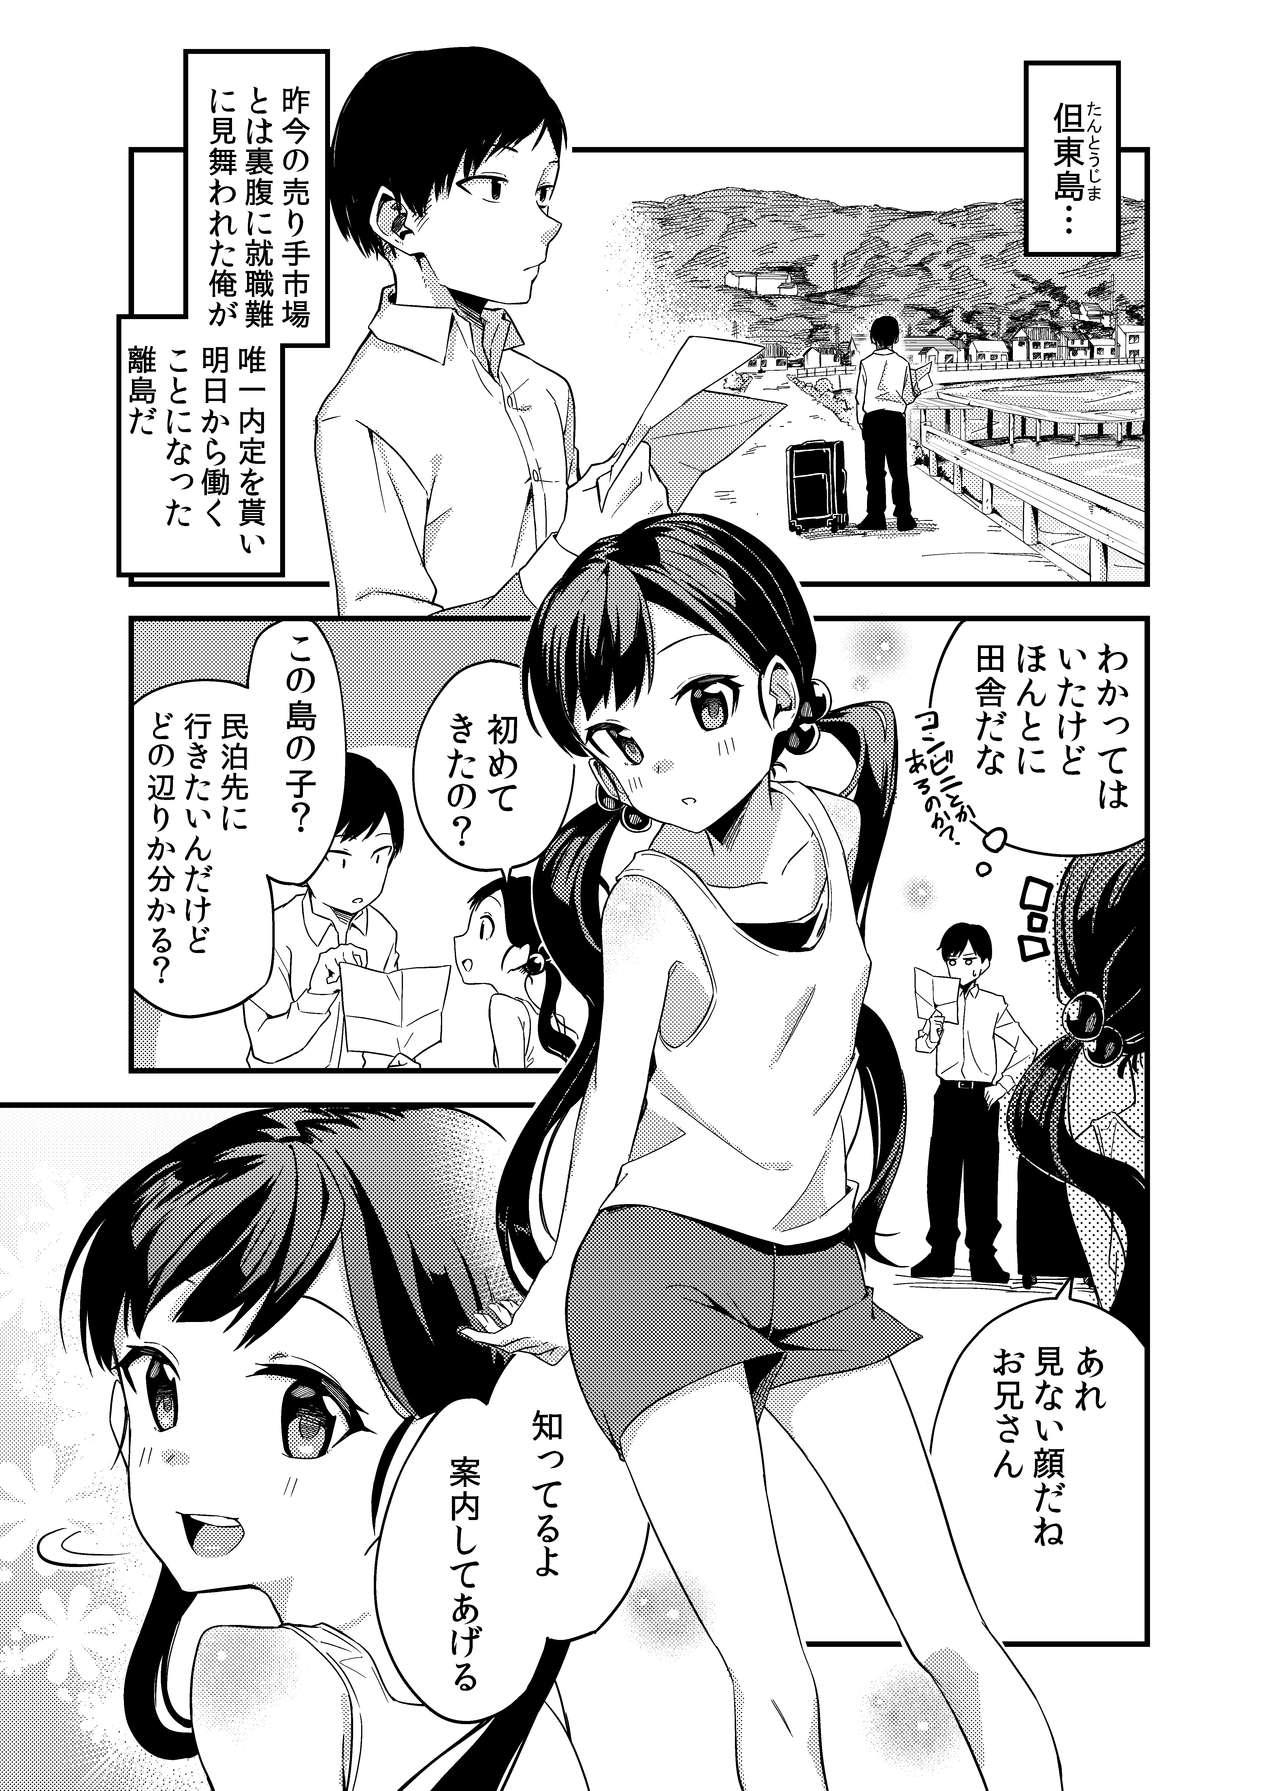 Raw Hanarejima no Shima Musume - Original Verification - Page 2